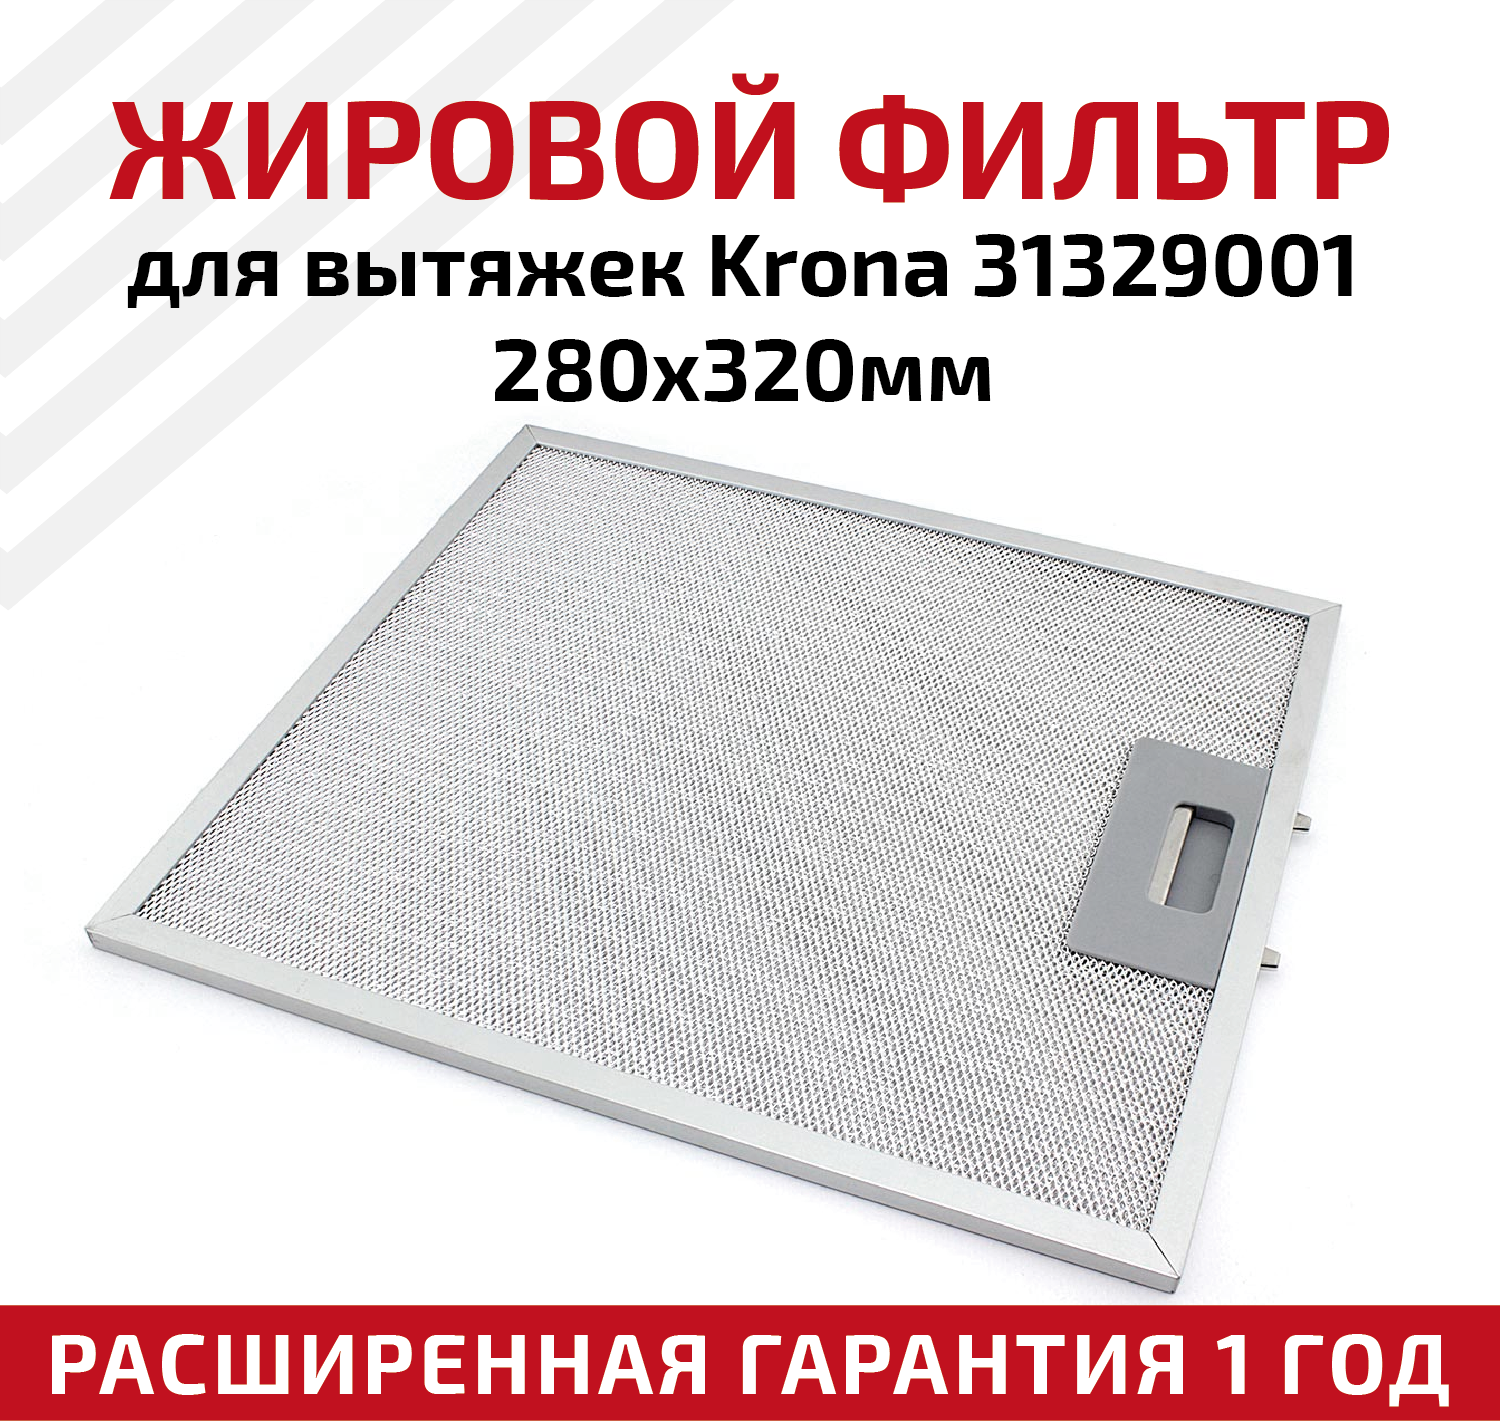 Жировой фильтр (кассета) алюминиевый (металлический) рамочный для вытяжек Krona 31329001, многоразовый, 280х320мм